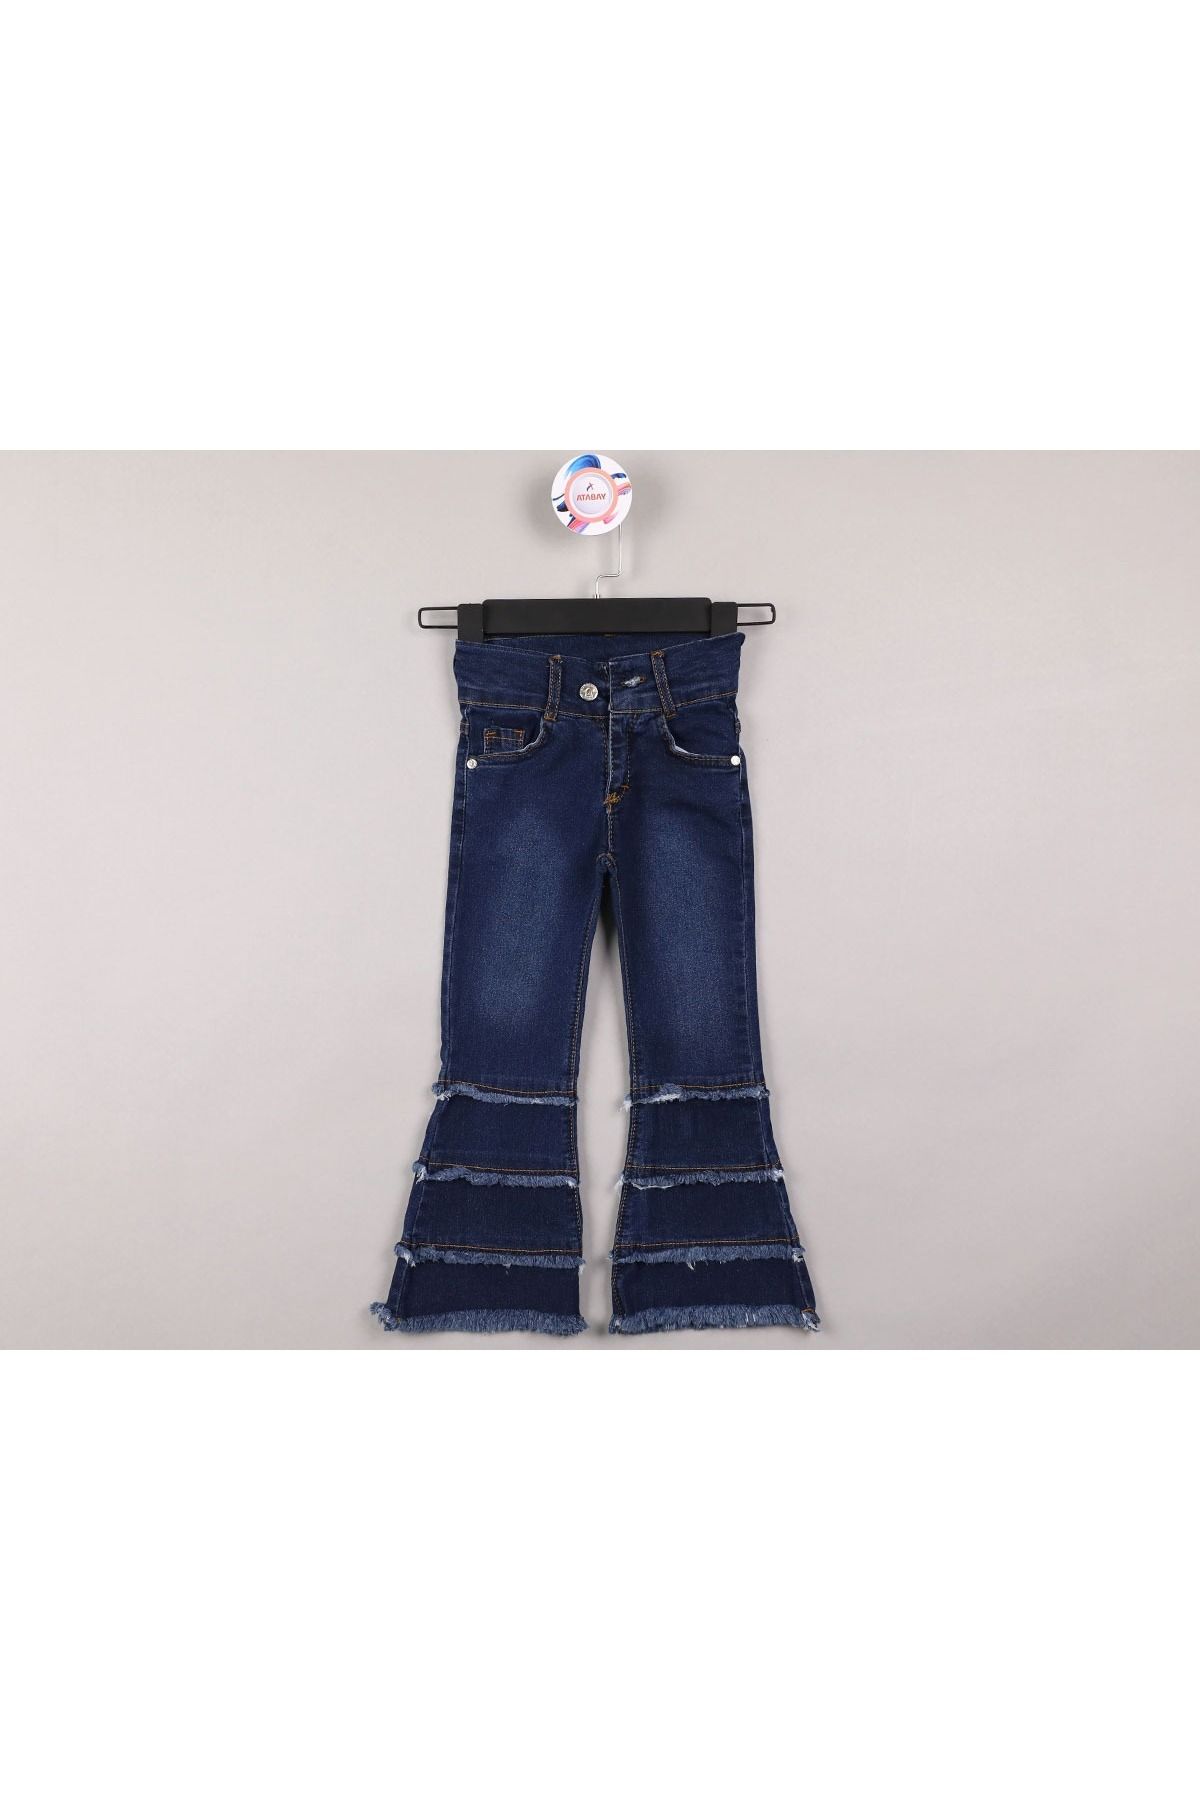 Buy Specialcal Toddler Little Kid Girls Denim Jeans Bell Bottom